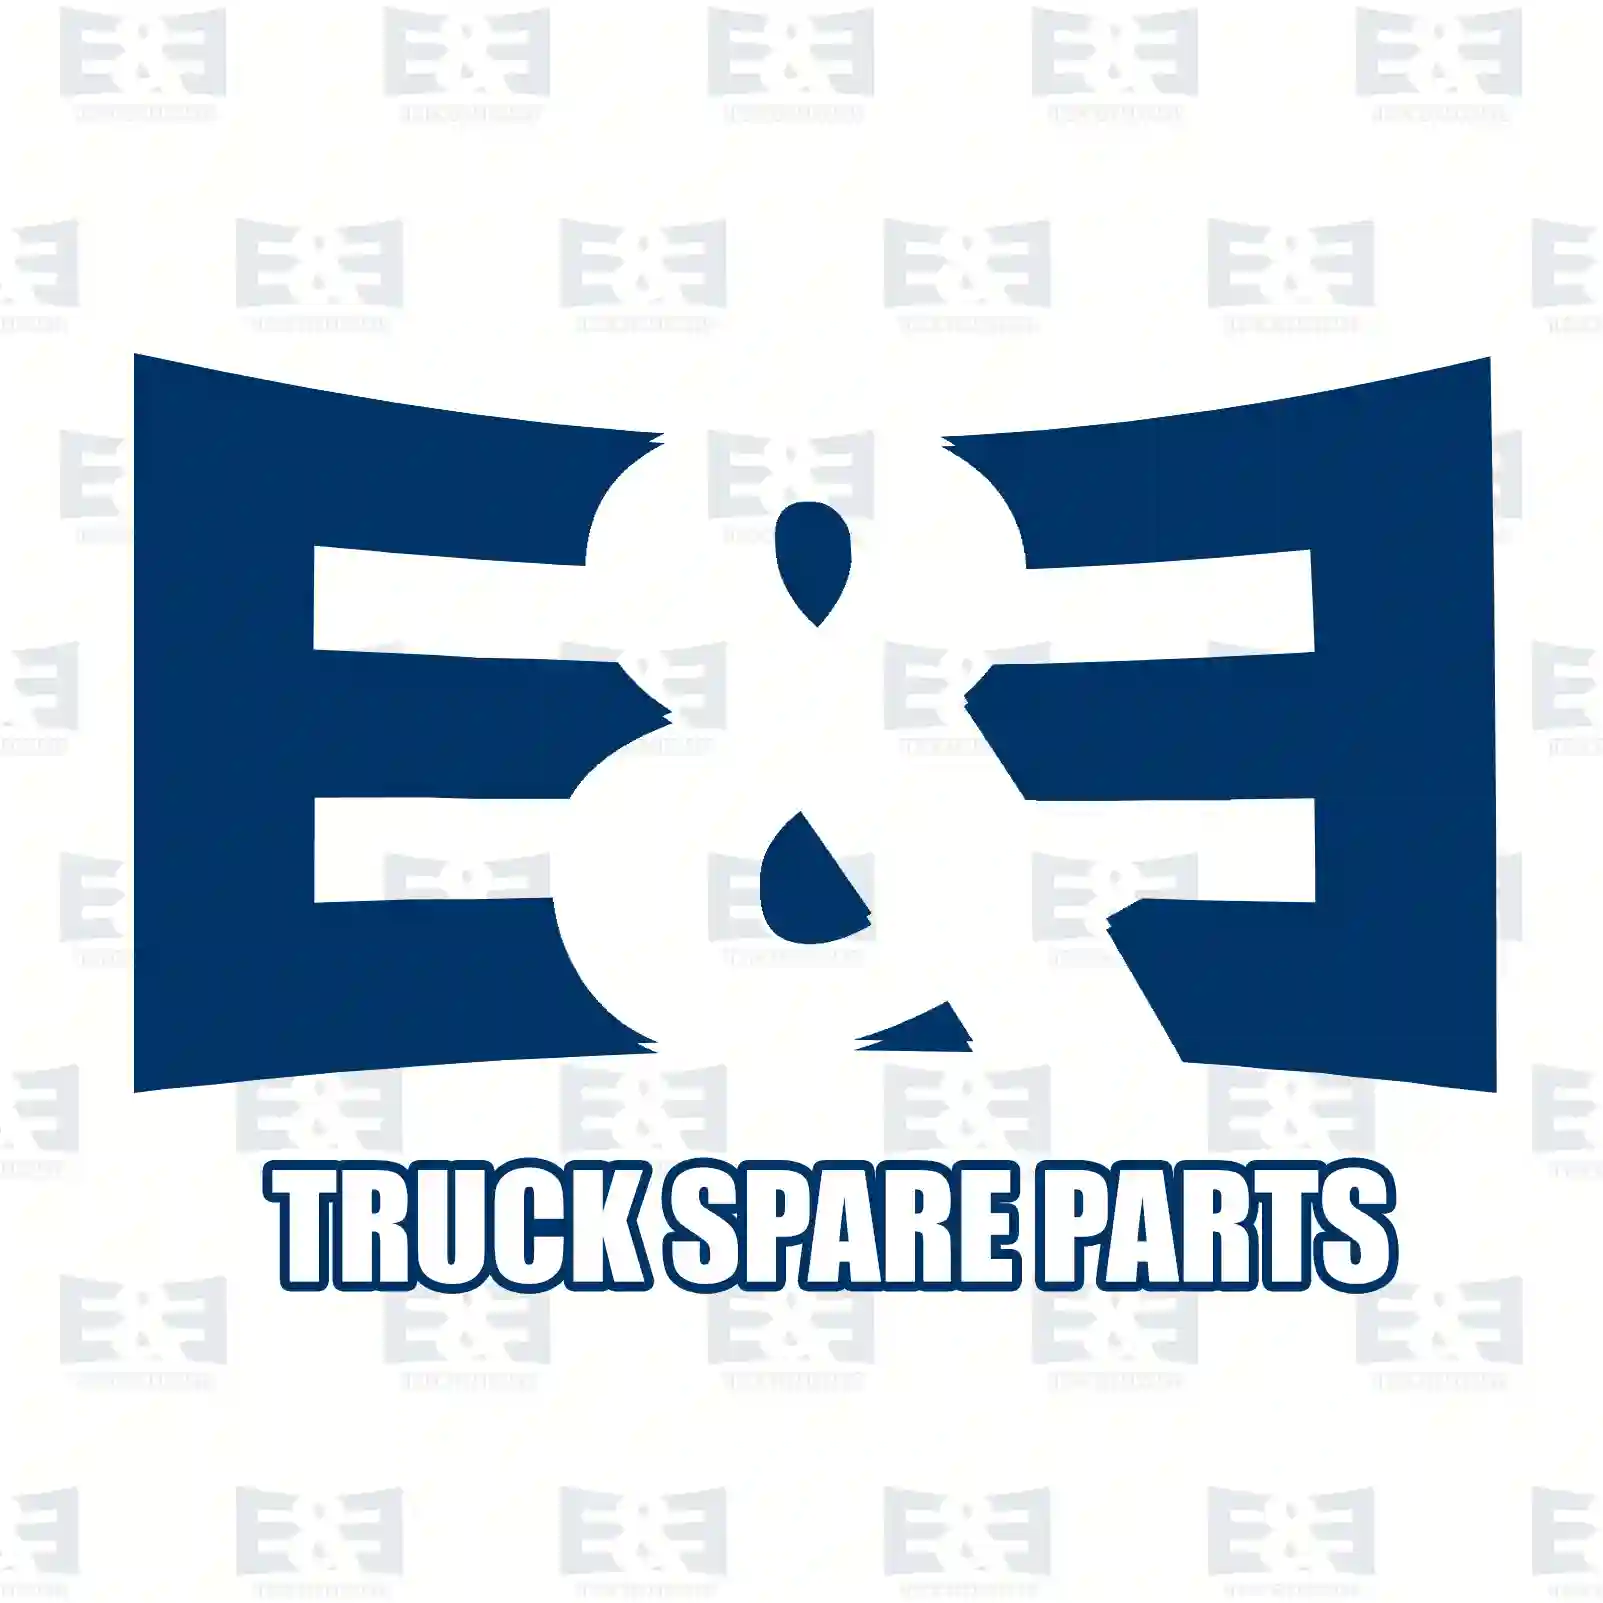 Air tank, 2E2294108, 5010525445, , , , , , ||  2E2294108 E&E Truck Spare Parts | Truck Spare Parts, Auotomotive Spare Parts Air tank, 2E2294108, 5010525445, , , , , , ||  2E2294108 E&E Truck Spare Parts | Truck Spare Parts, Auotomotive Spare Parts